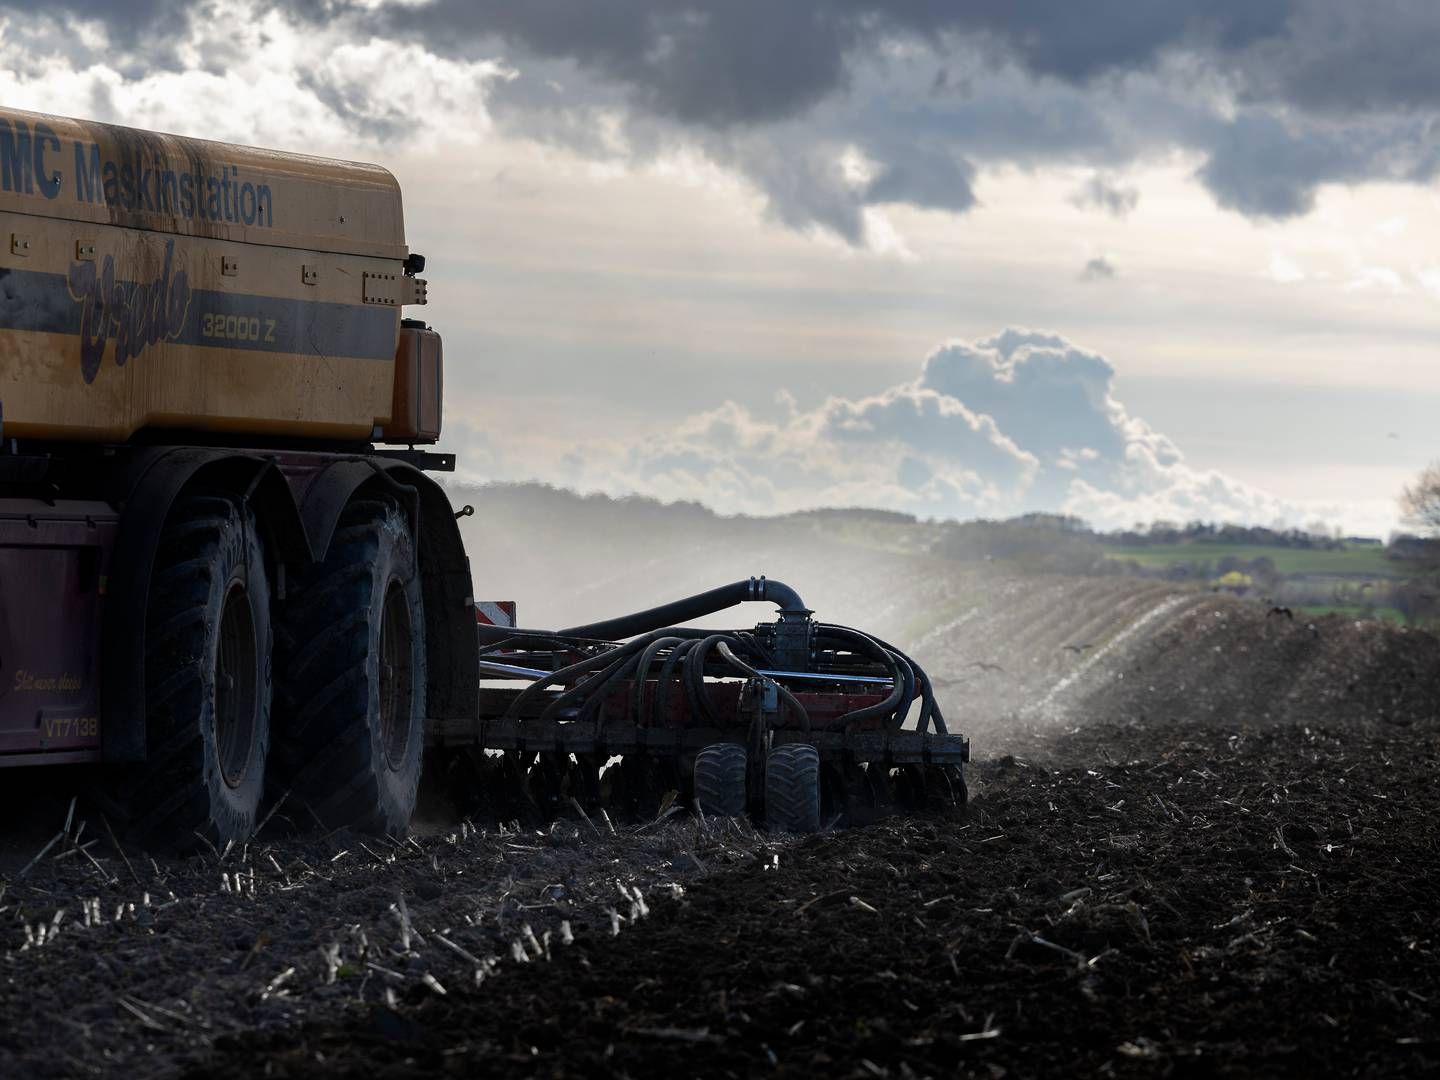 Det danske landbrugsareal skal udnyttes bedre, lyder det i nyt udspil. | Foto: Thomas Borberg/Ritzau Scanpix